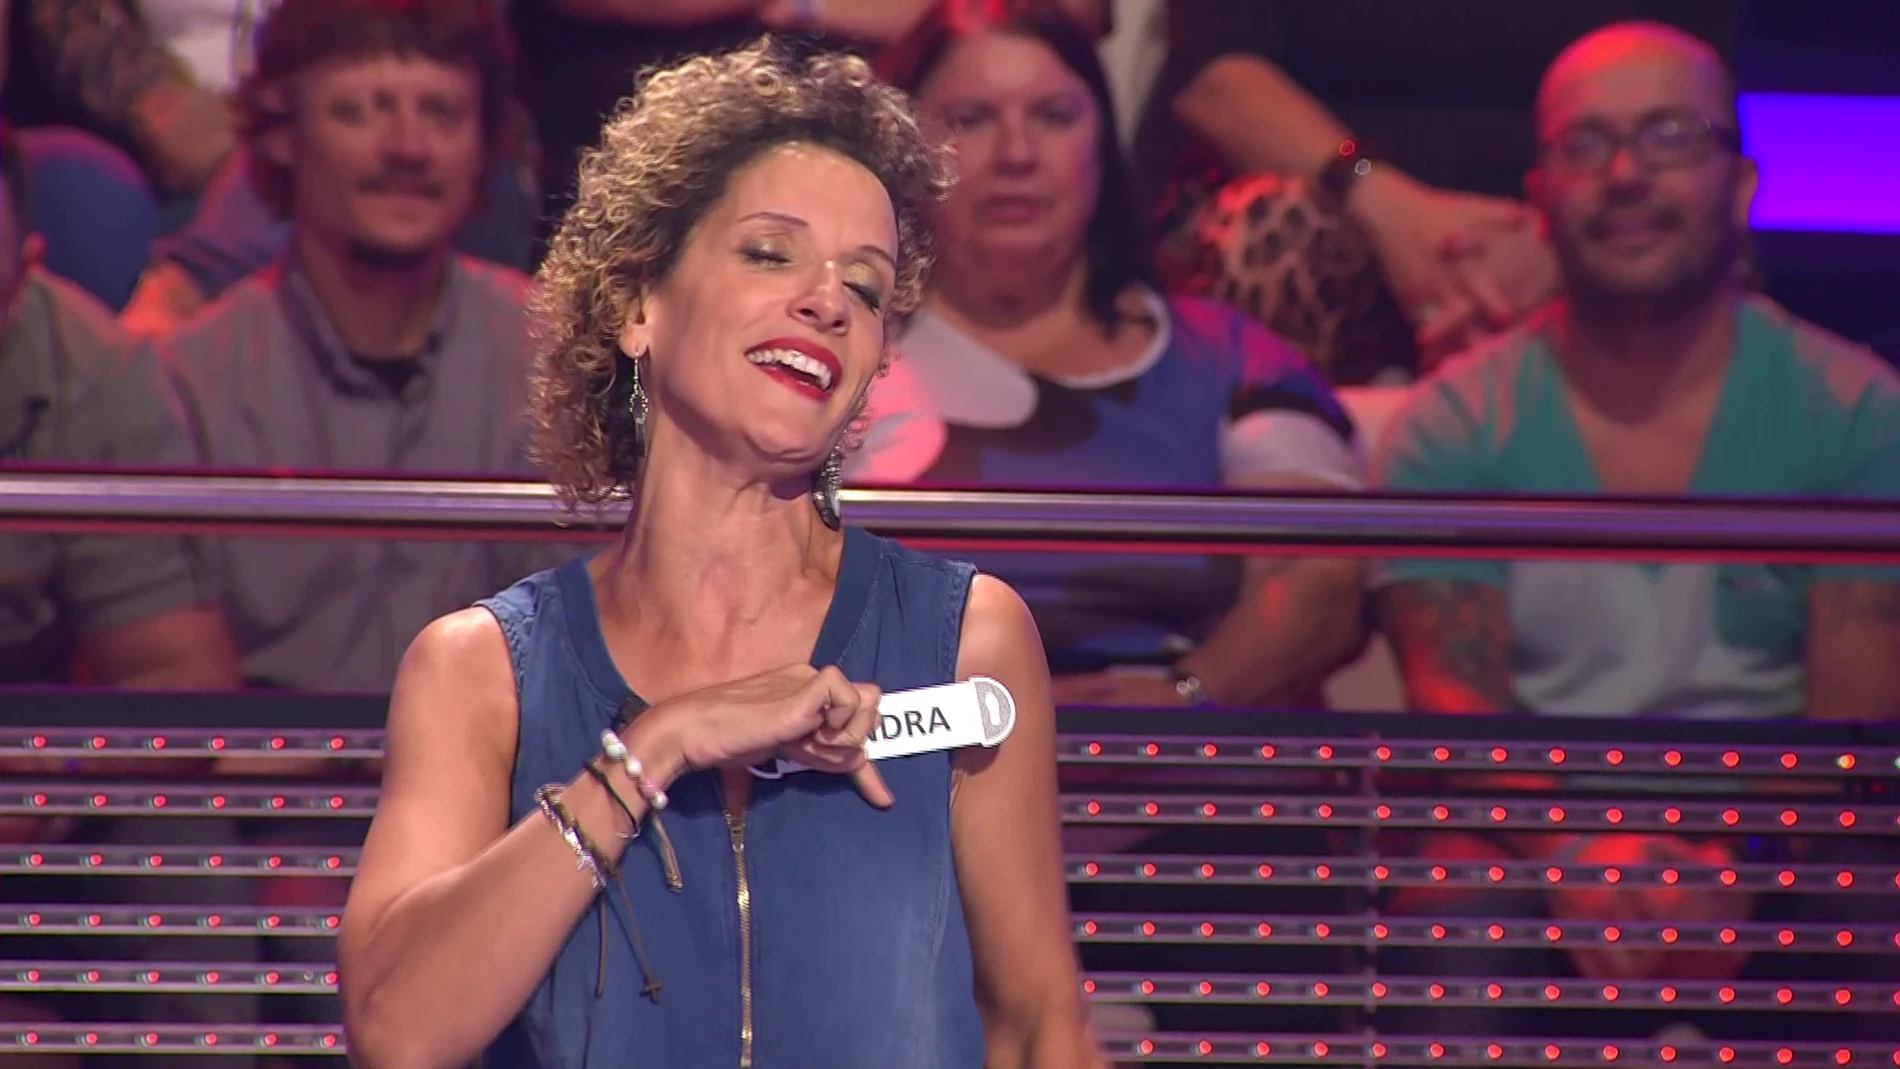 Una concursante interpreta 'Estando contigo' en lenguaje de signos